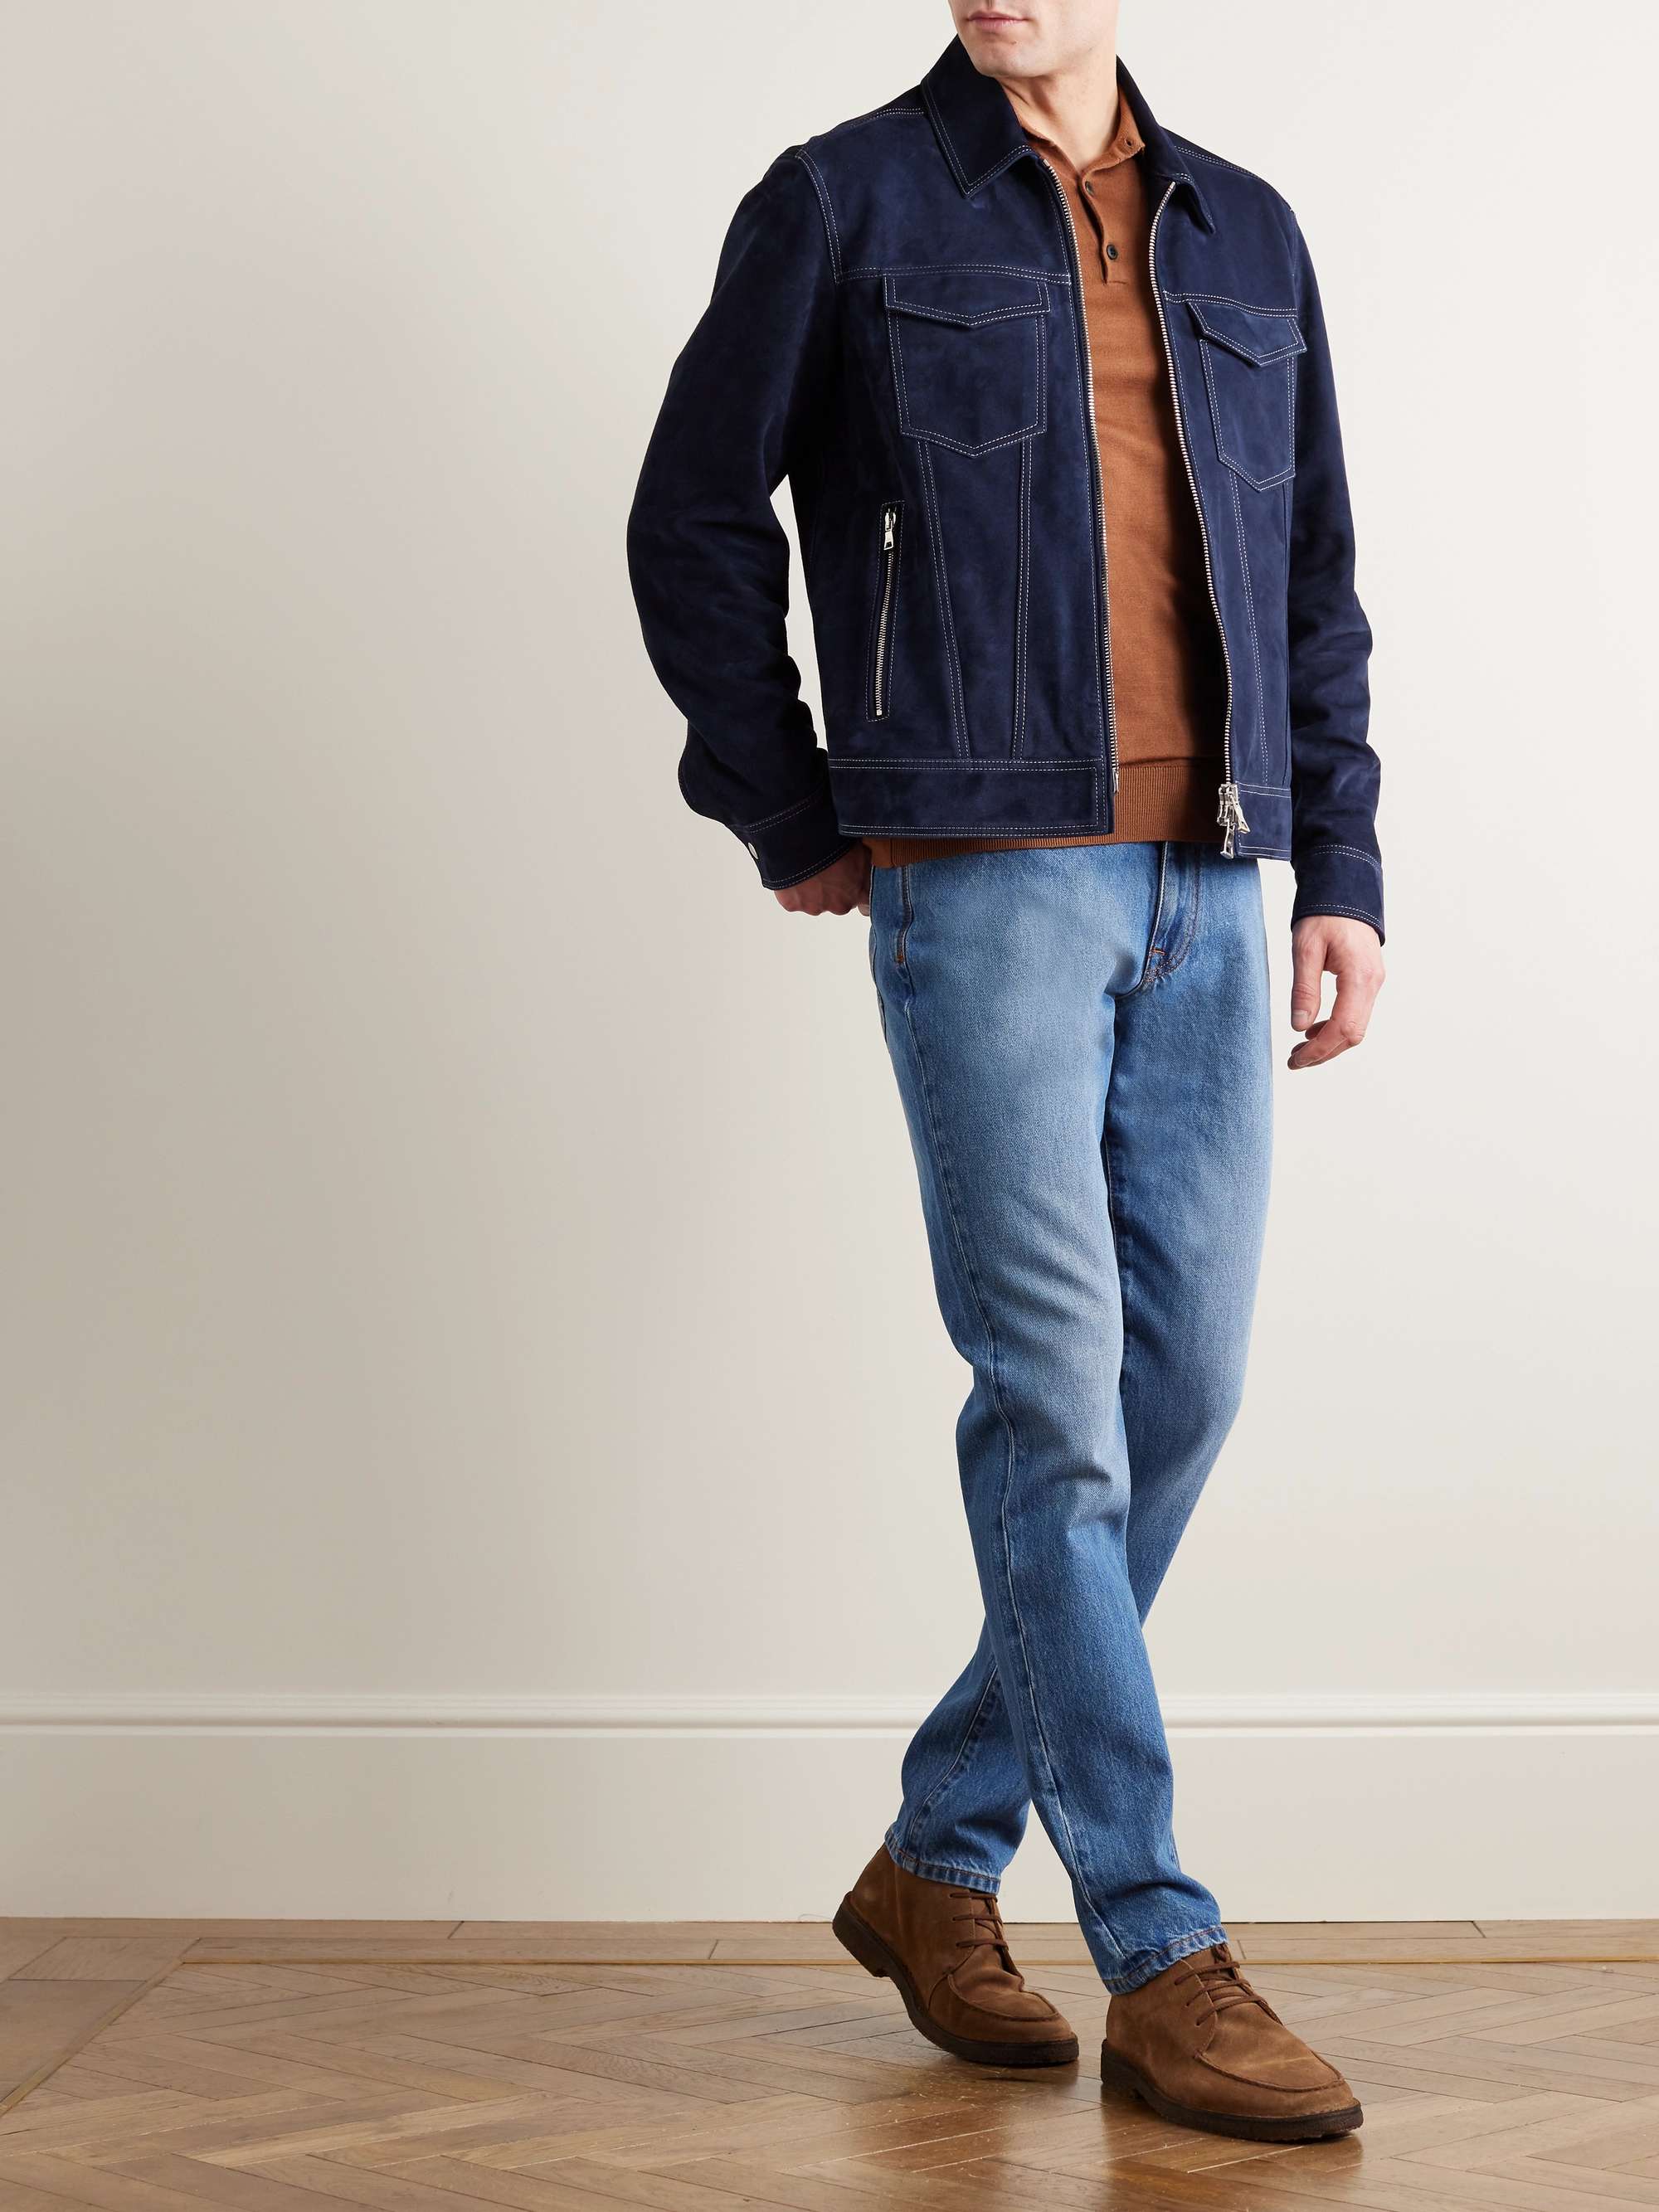 BOGLIOLI Slim-Fit Jeans for Men | MR PORTER